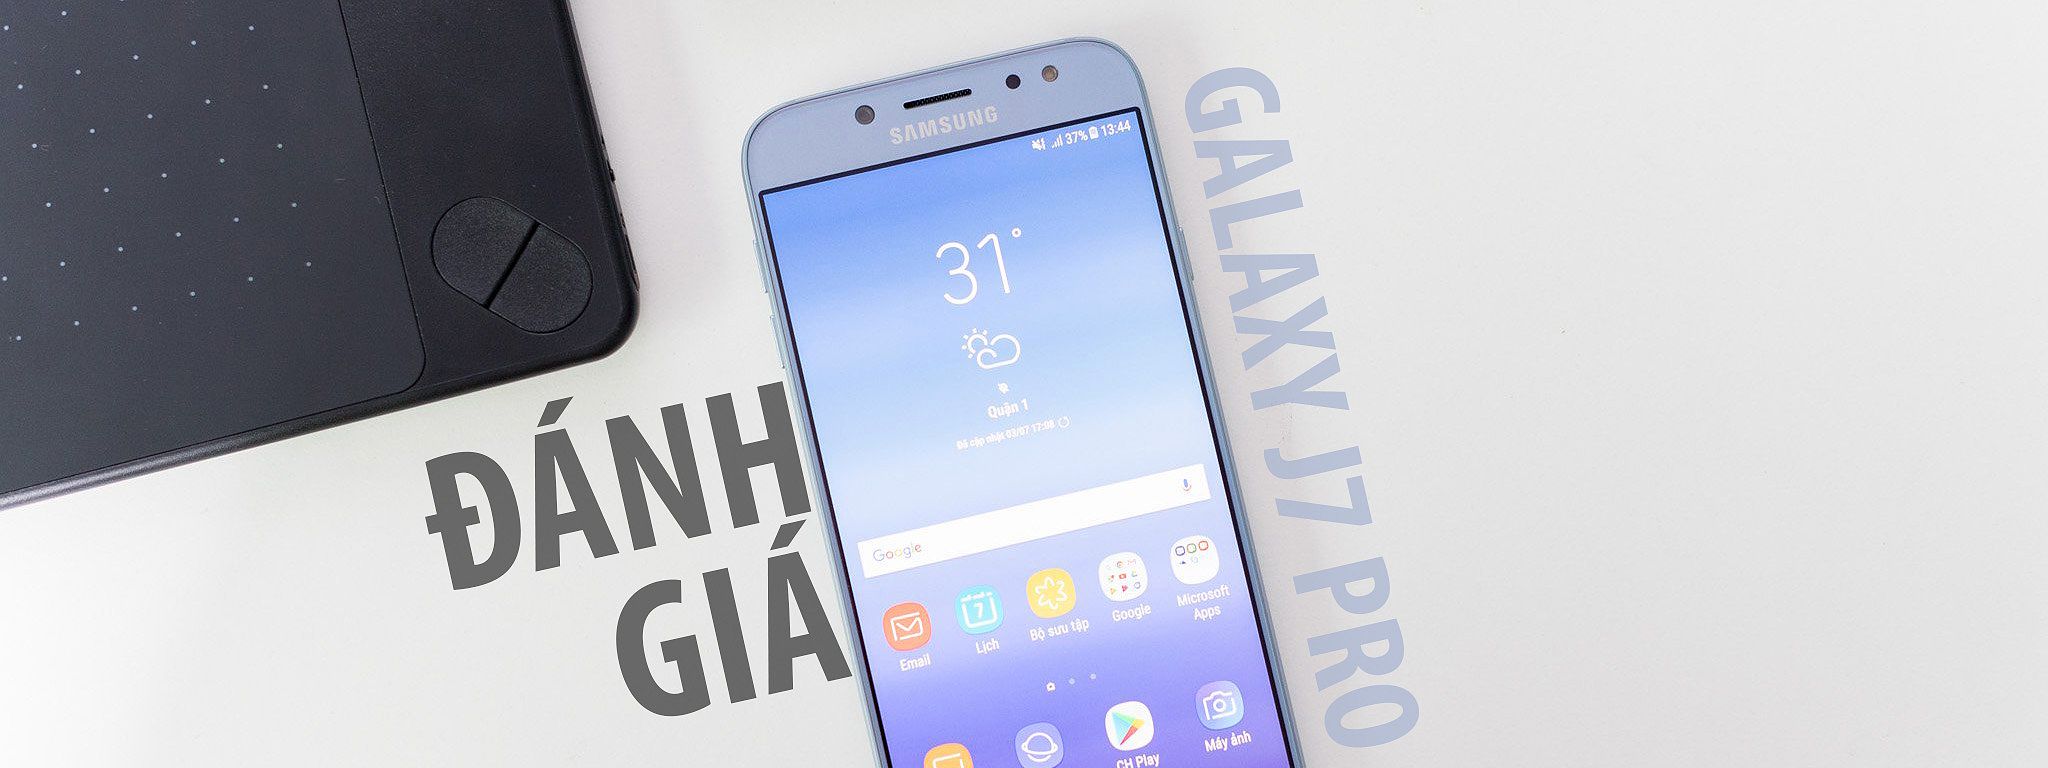 Review Điện Thoại Samsung J7 Pro: Đánh Giá Chi Tiết Về Smartphone Tầm Trung Này